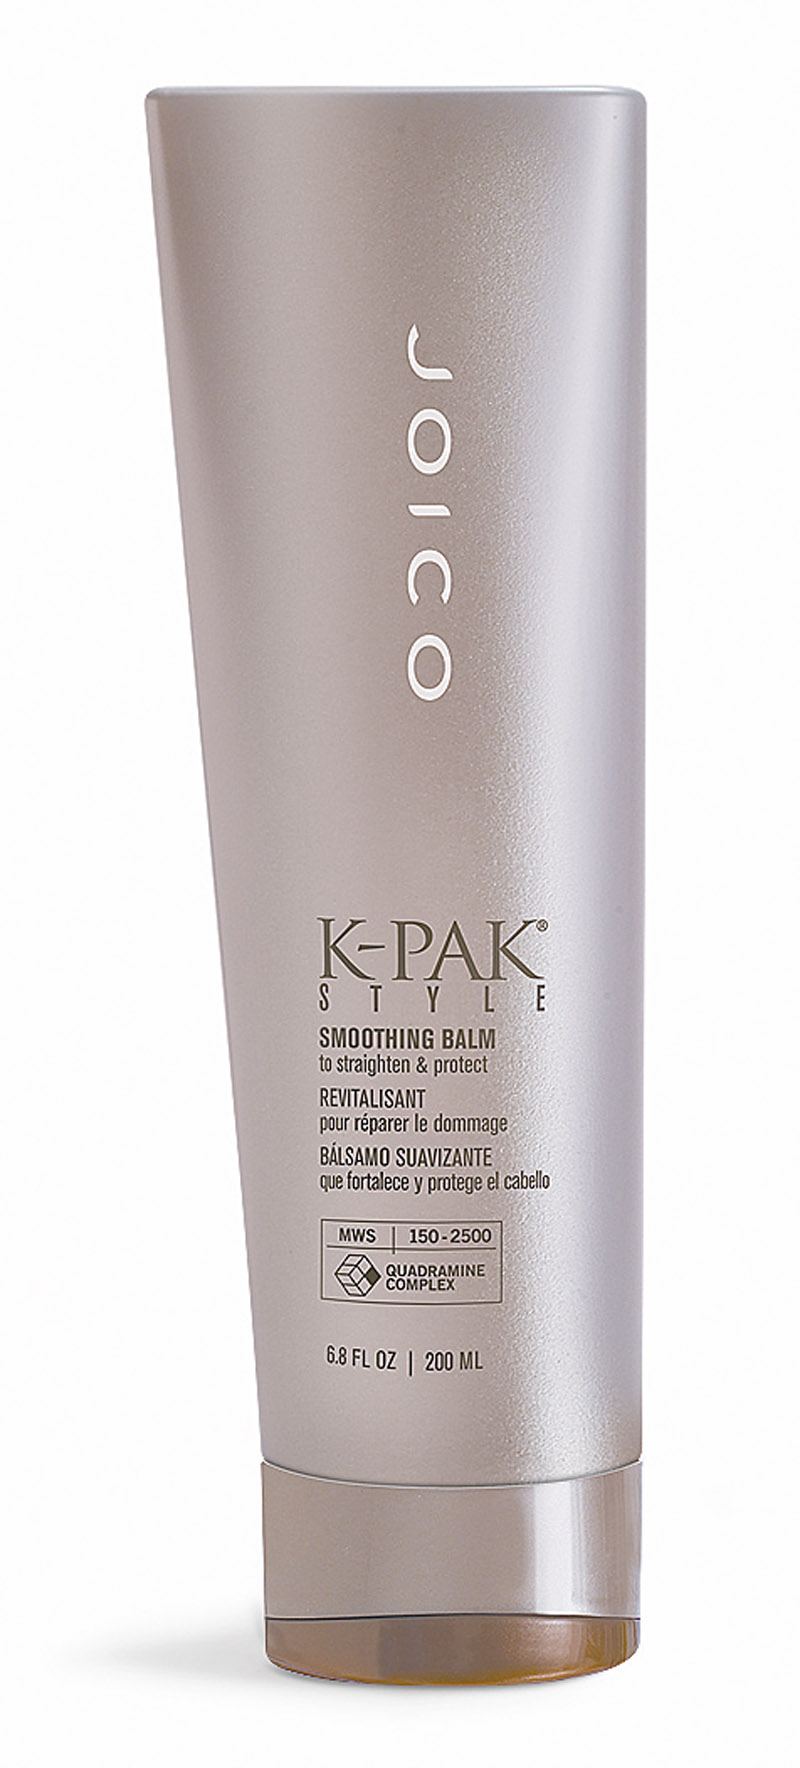 Joico bálsamo K-Park Style, R$ 105: ativado com o calor, ajuda no alisamento durante a escova e protege os cabelos contra químicas. Joico 0800-7704546